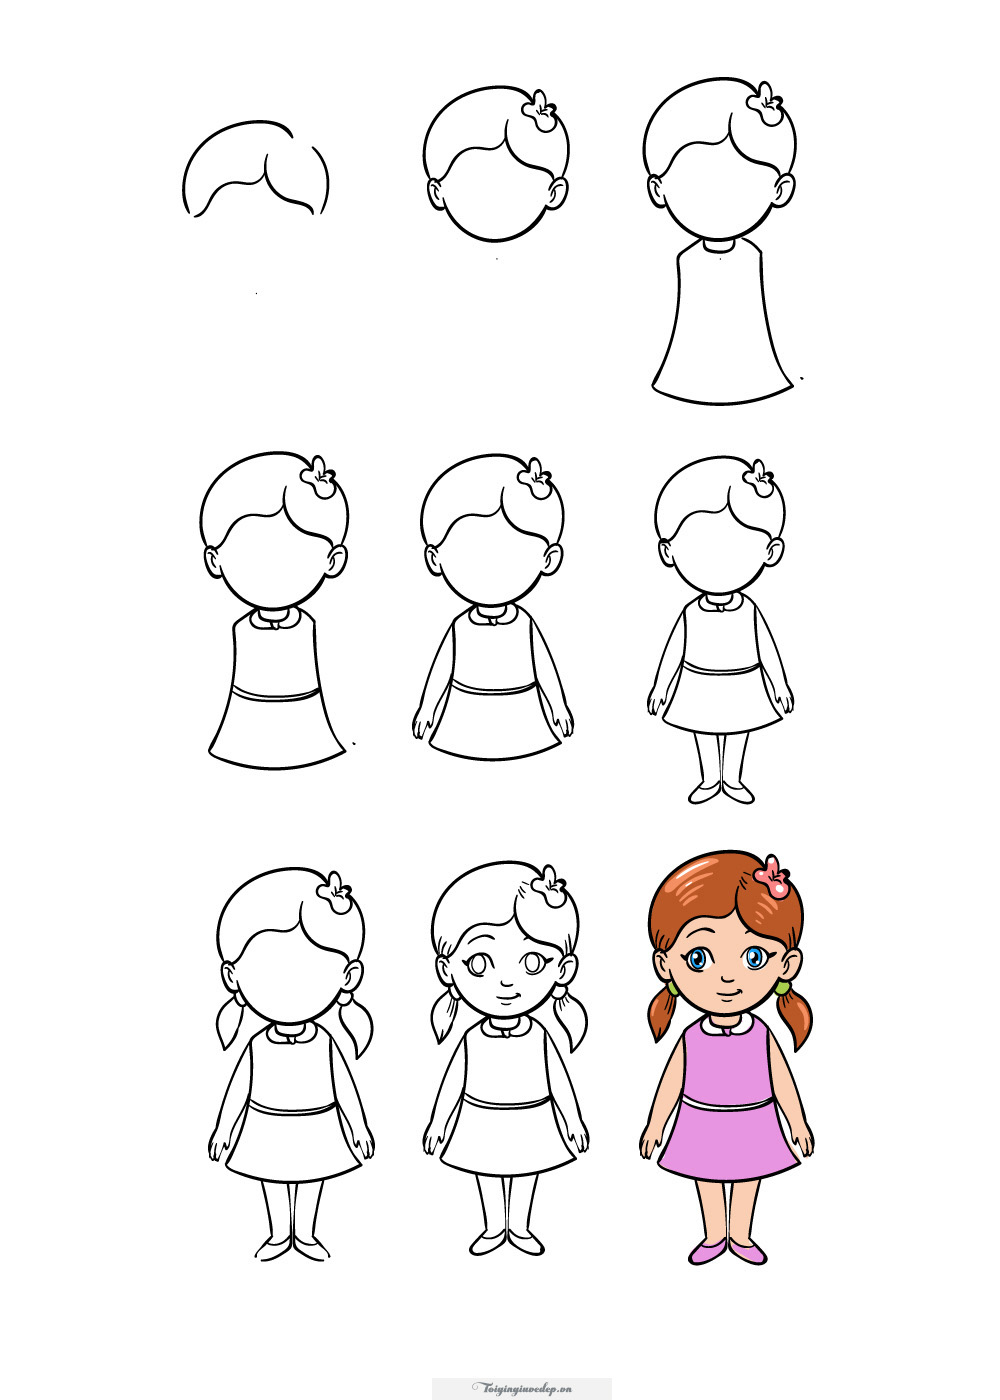 Học cách vẽ con người đơn giản cho bé trong vài bước dễ dàng